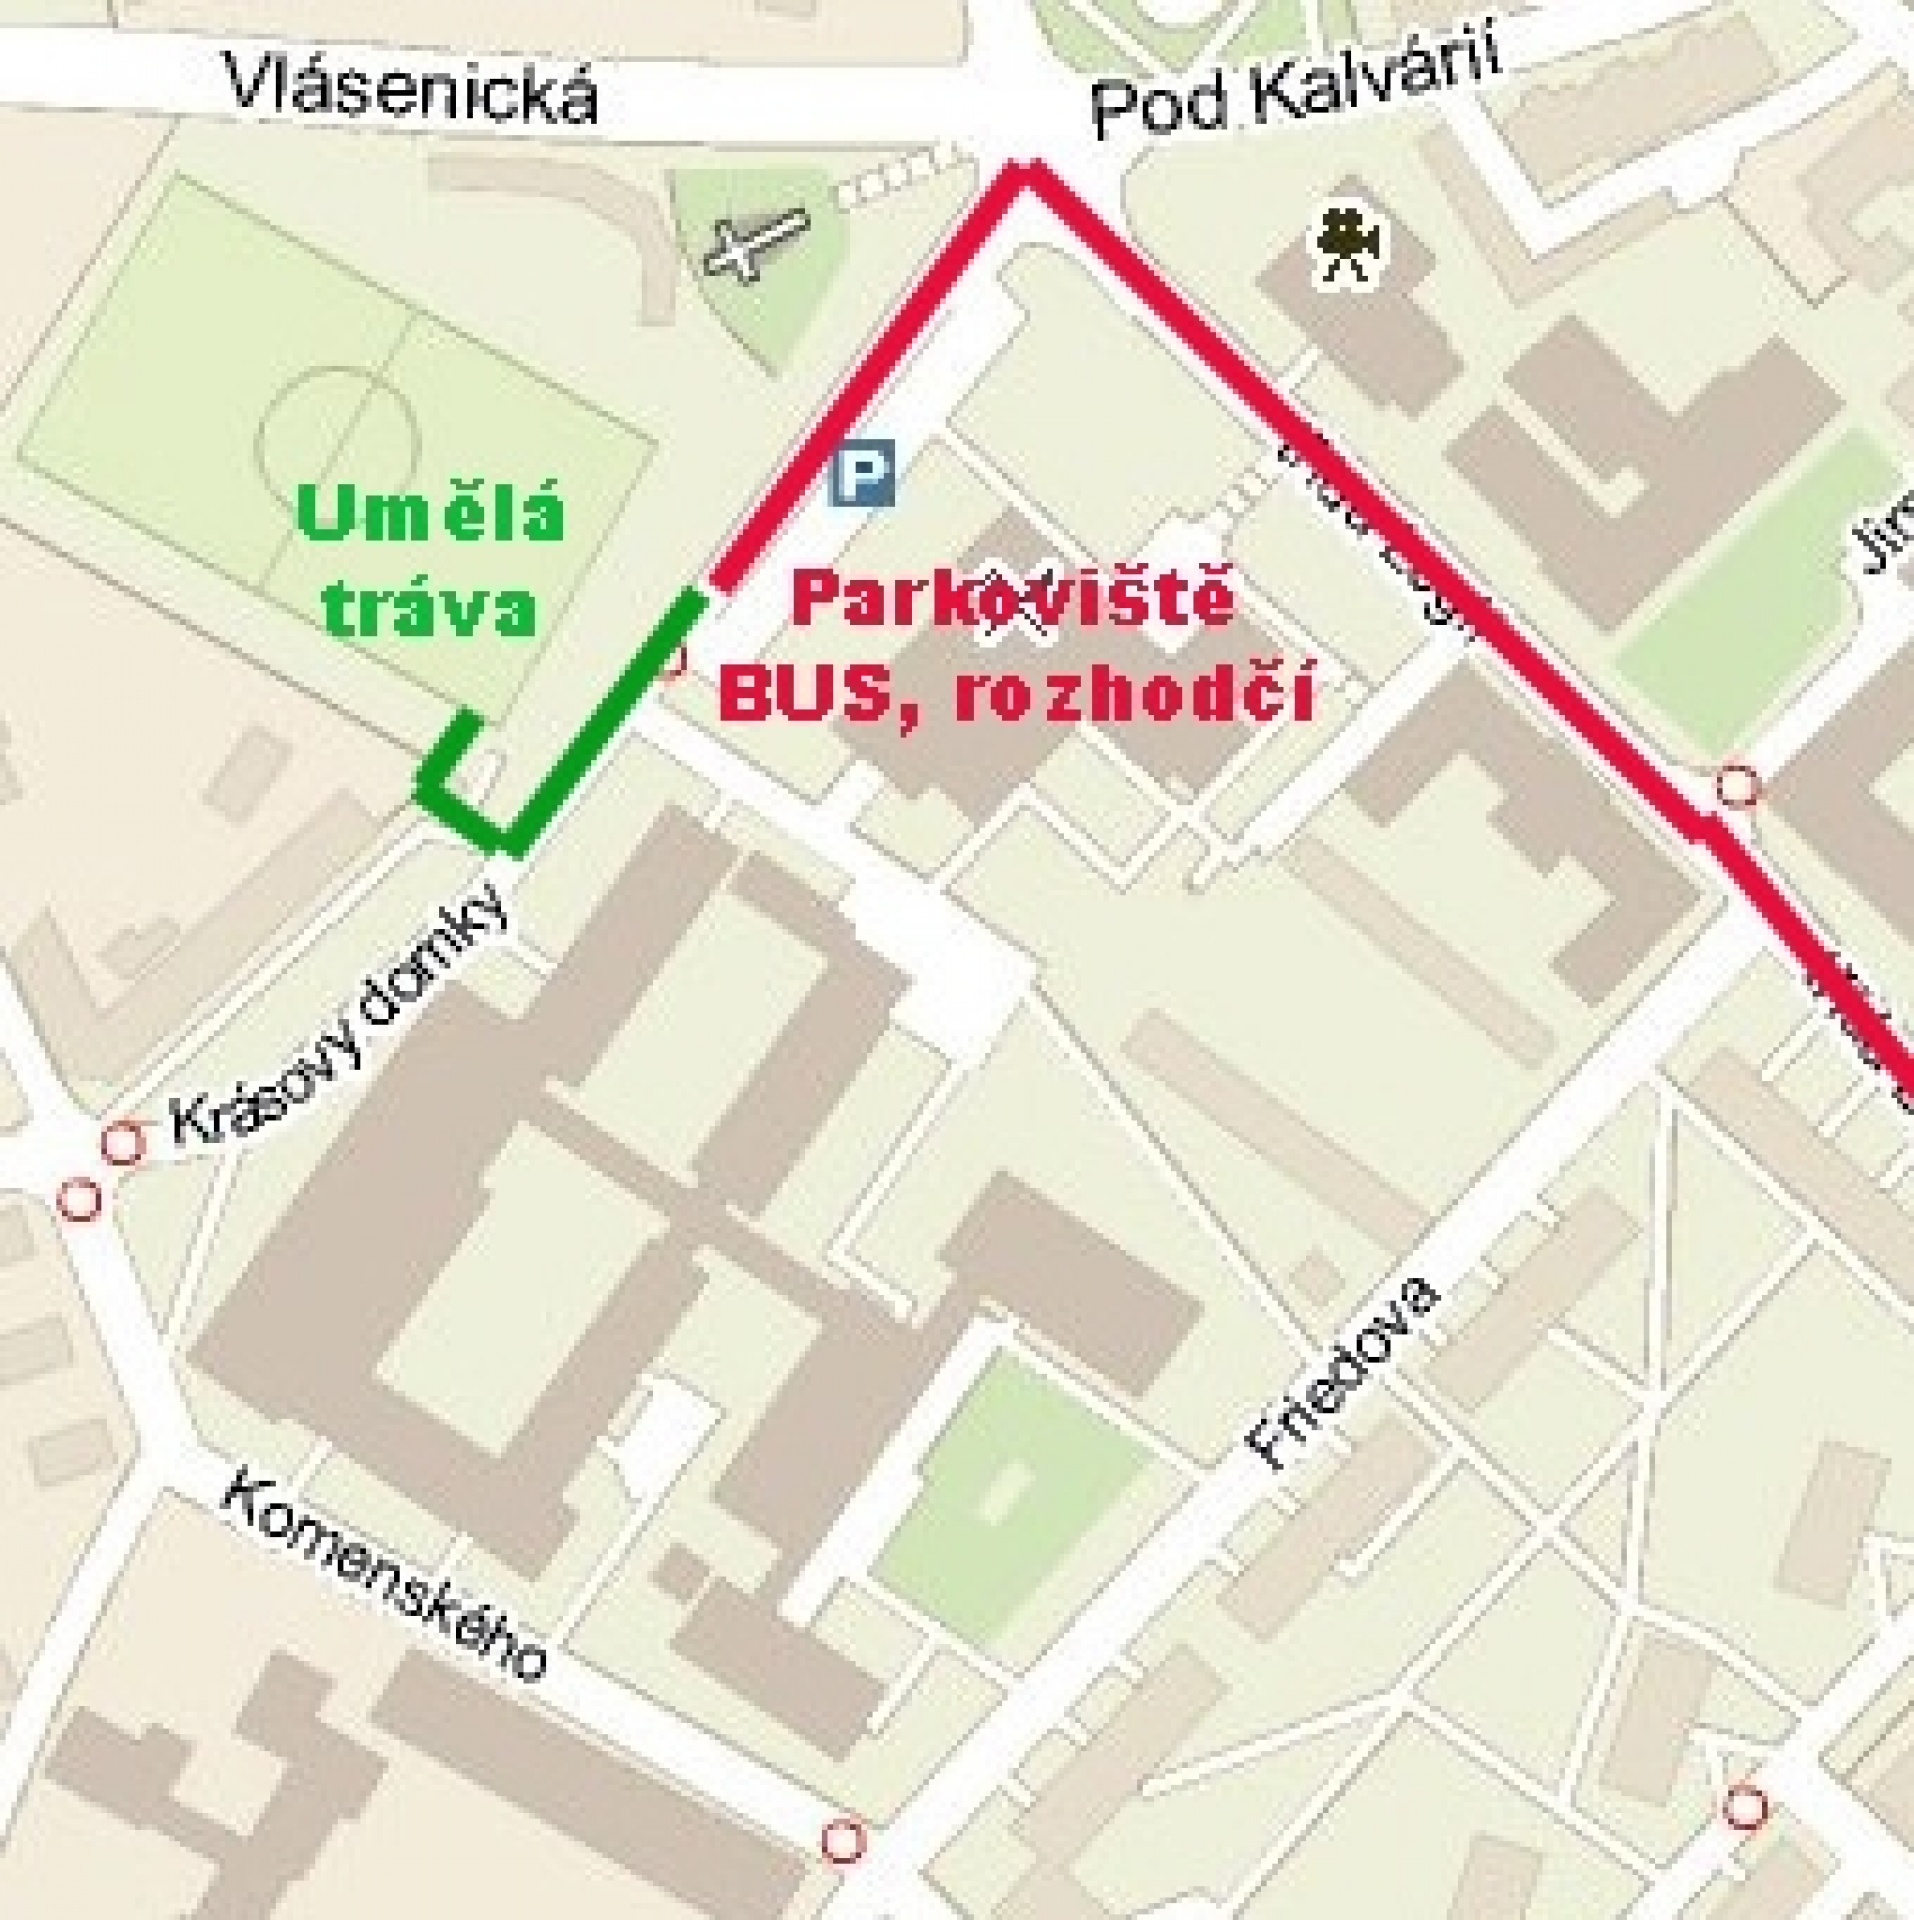 Příjezdová mapa na fotbalový stadion Za Kalvárií, kde se nachází hřiště s umělým travnatým povrchem.